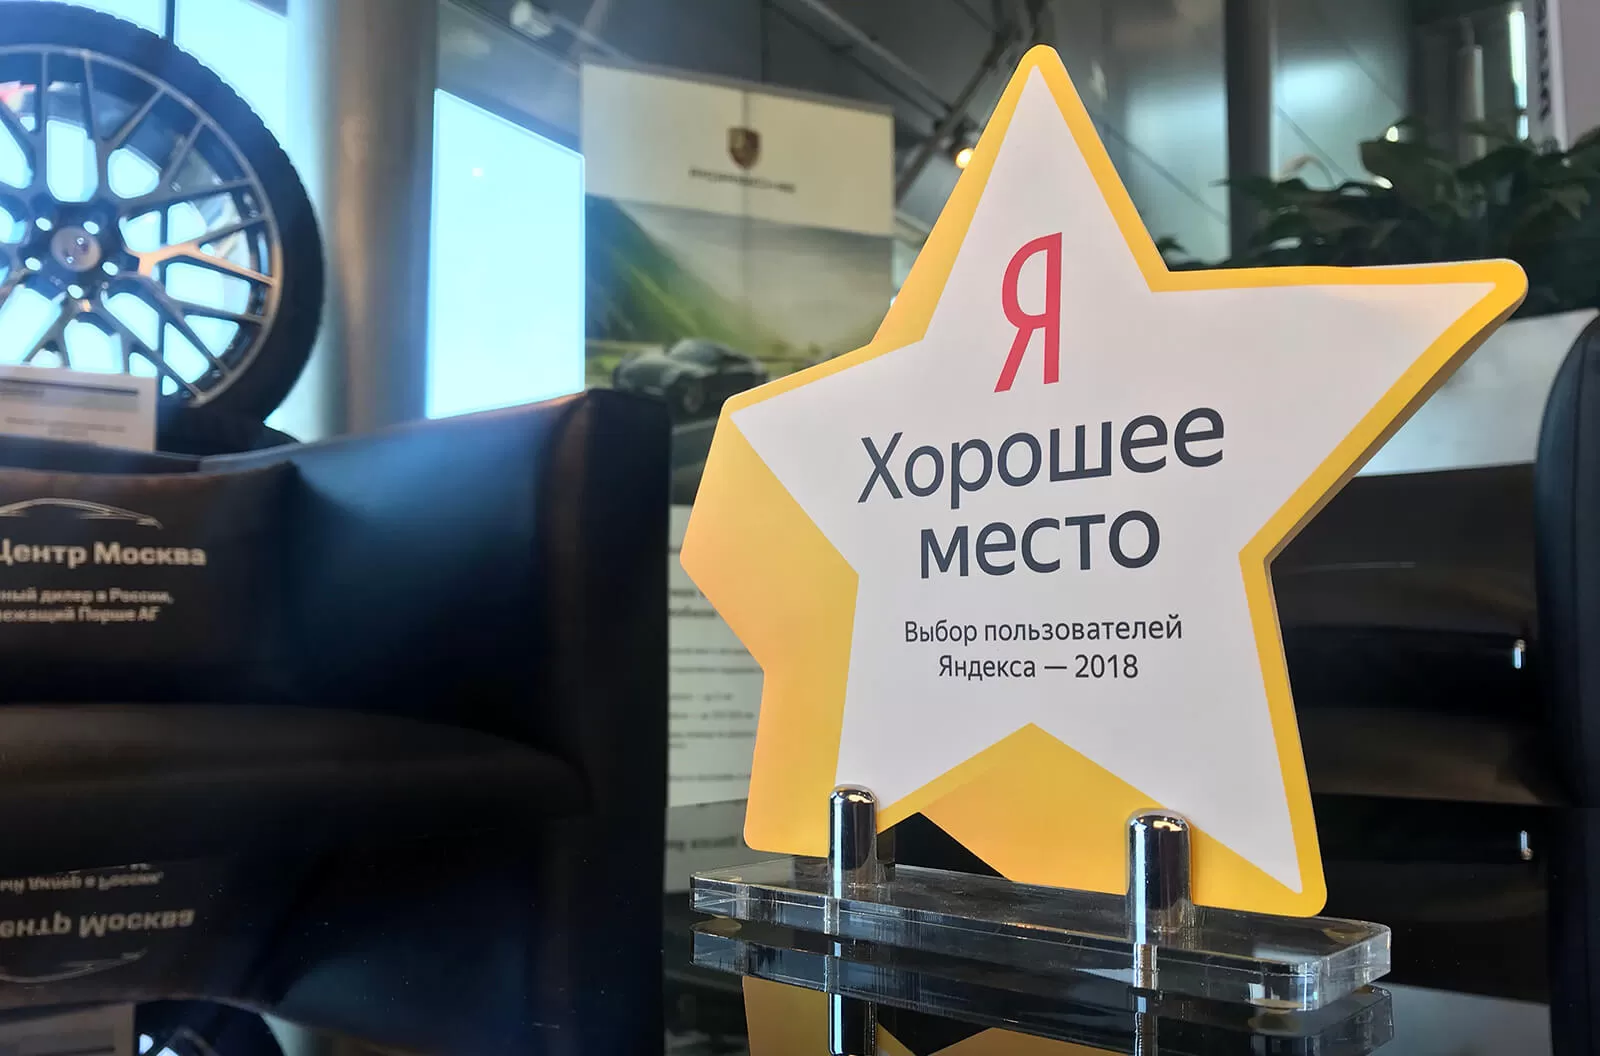 Порше Центр Москва получил звезду от Яндекс!